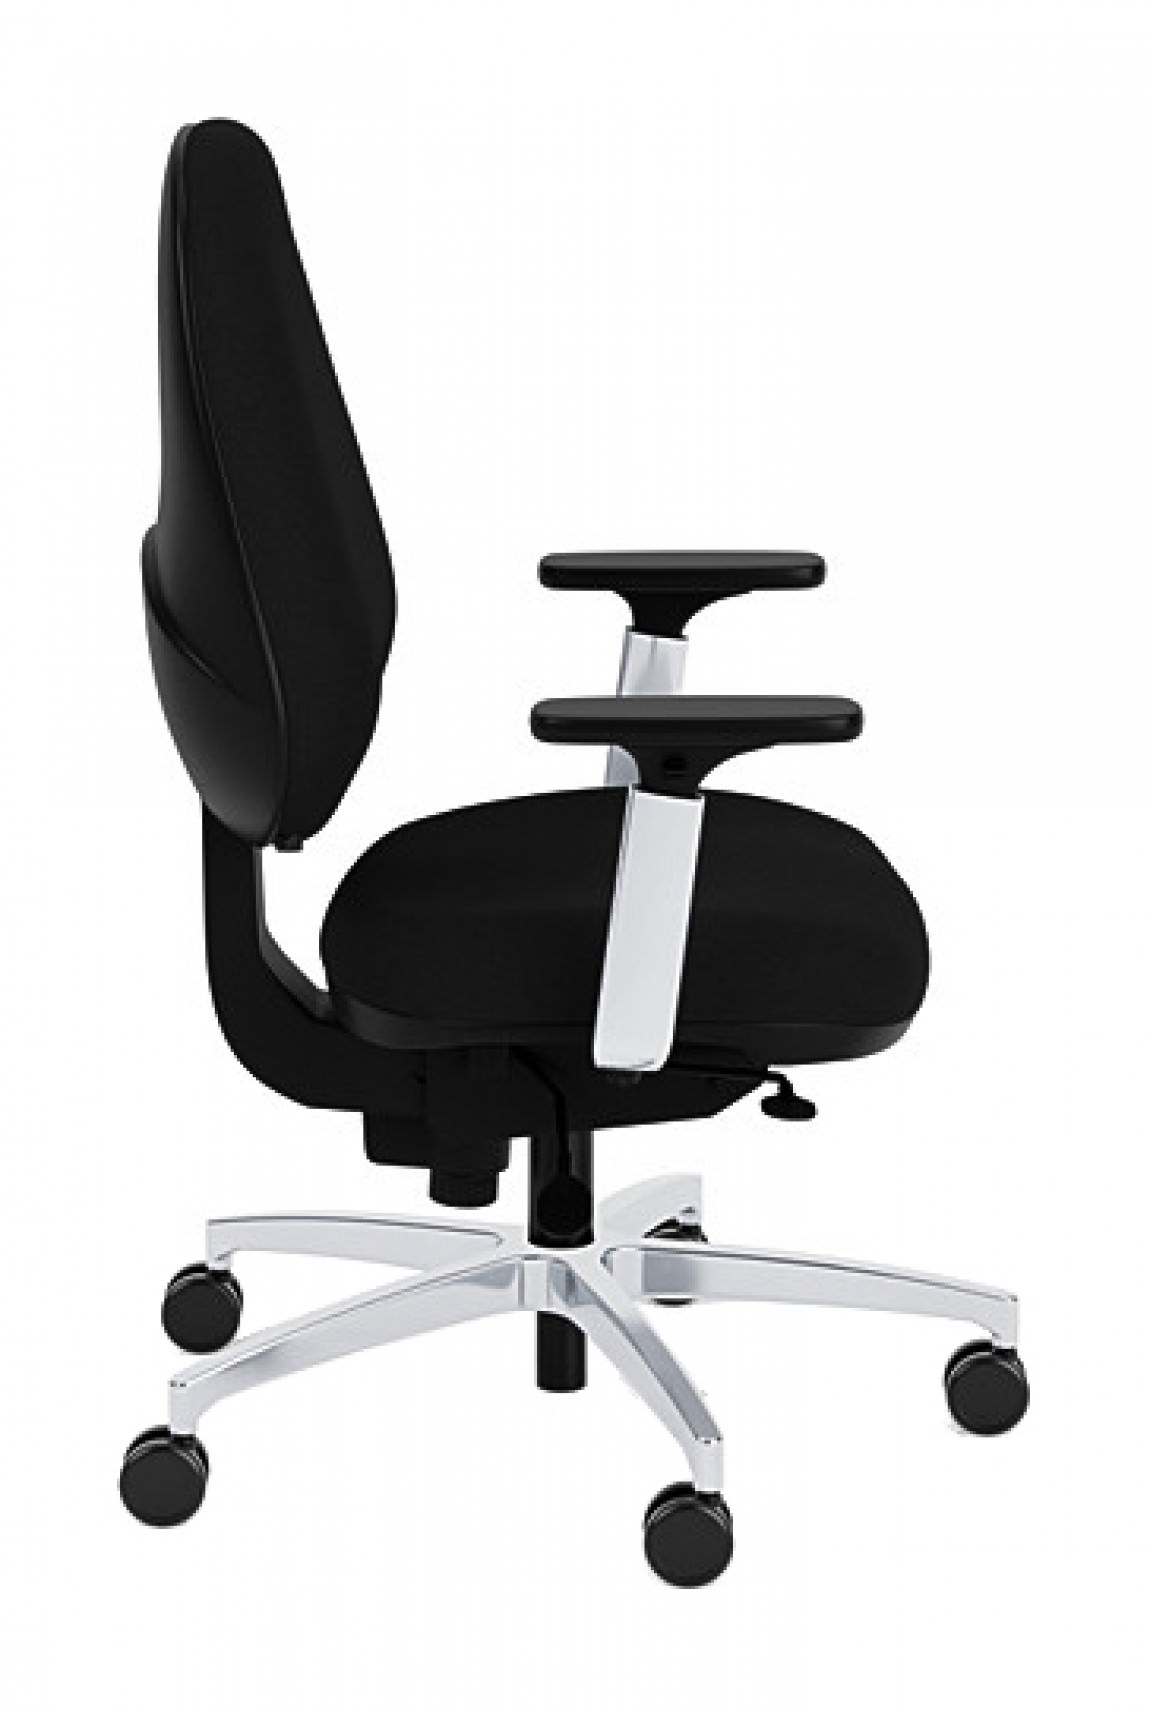 https://madisonliquidators.com/images/p/1150/29893-mid-back-ergonomic-chair-2.jpg